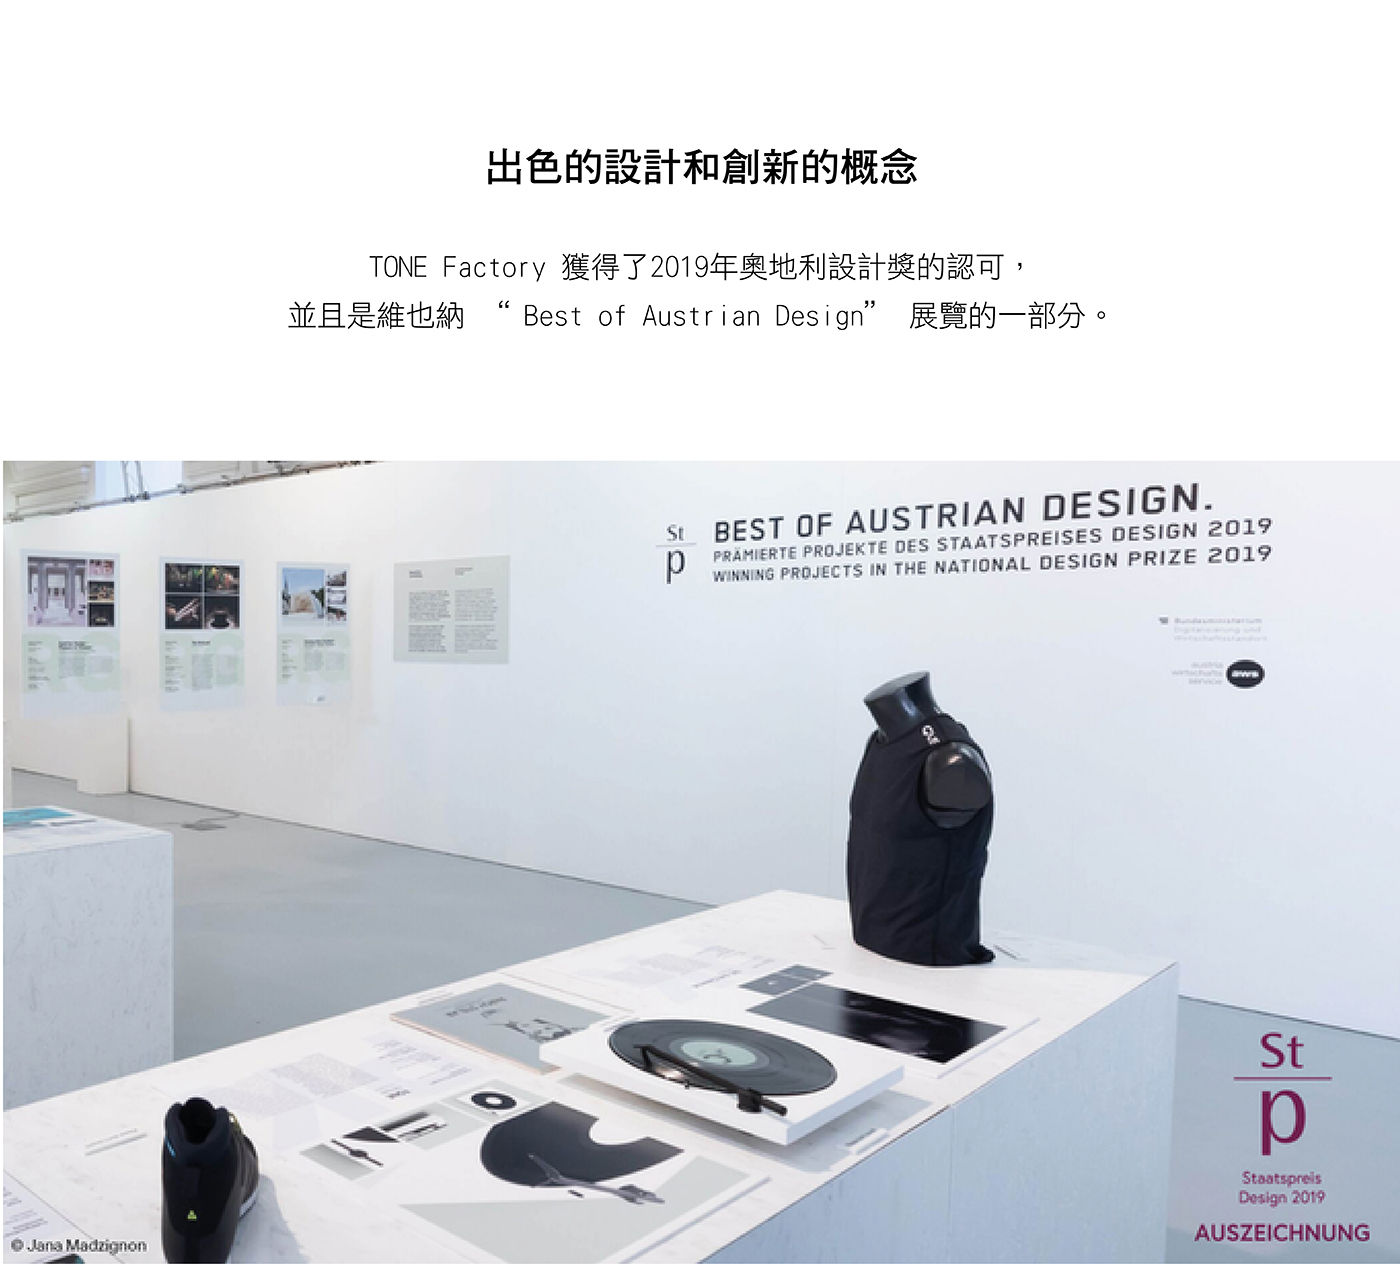 TONE Factory 藍牙黑膠唱盤 含防塵蓋出色的設計和創新的概念獲得2019奧地利設計講認可並且是維也納展覽的一部分